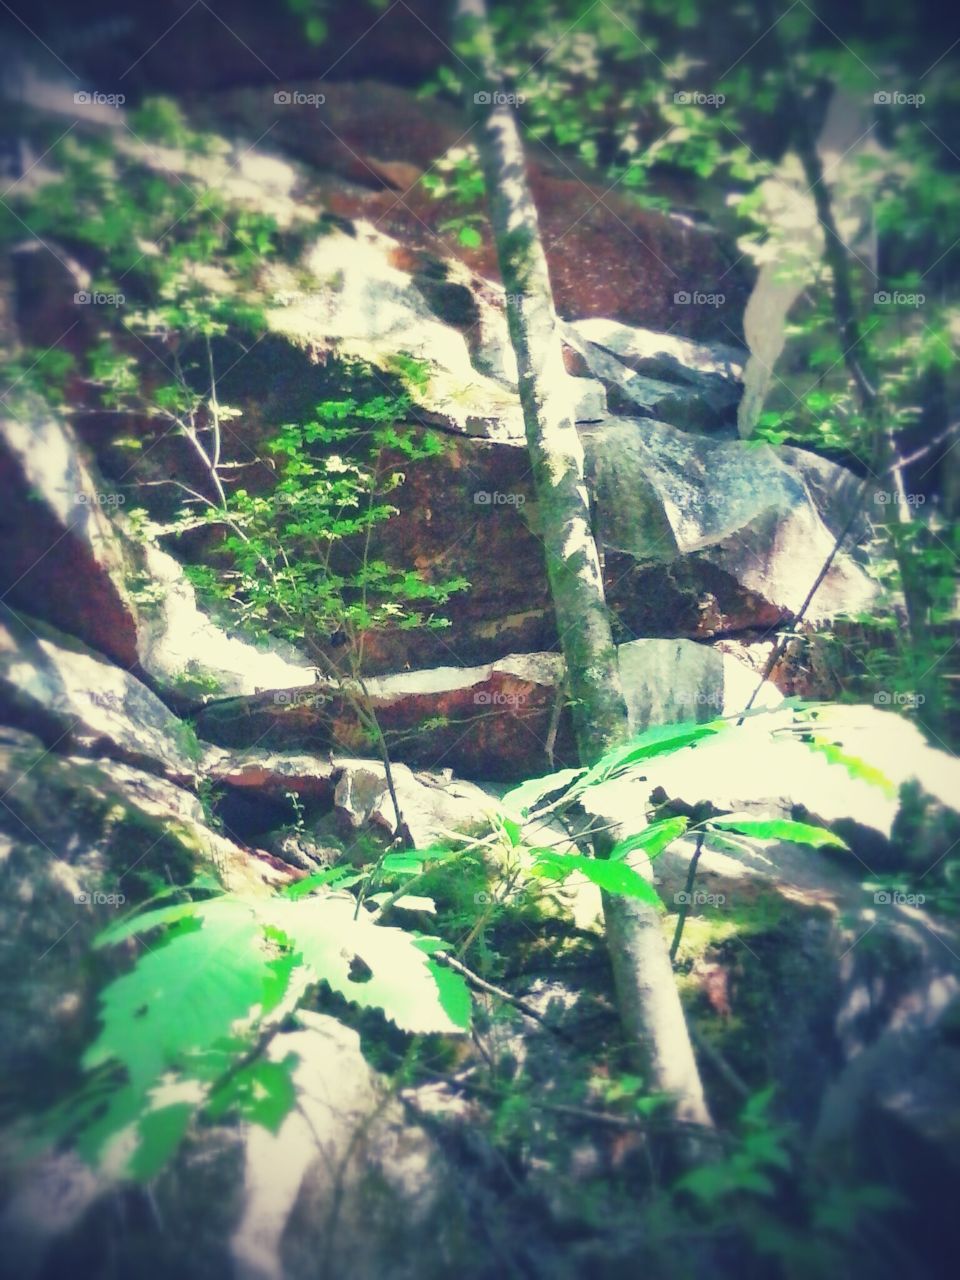 rock trails